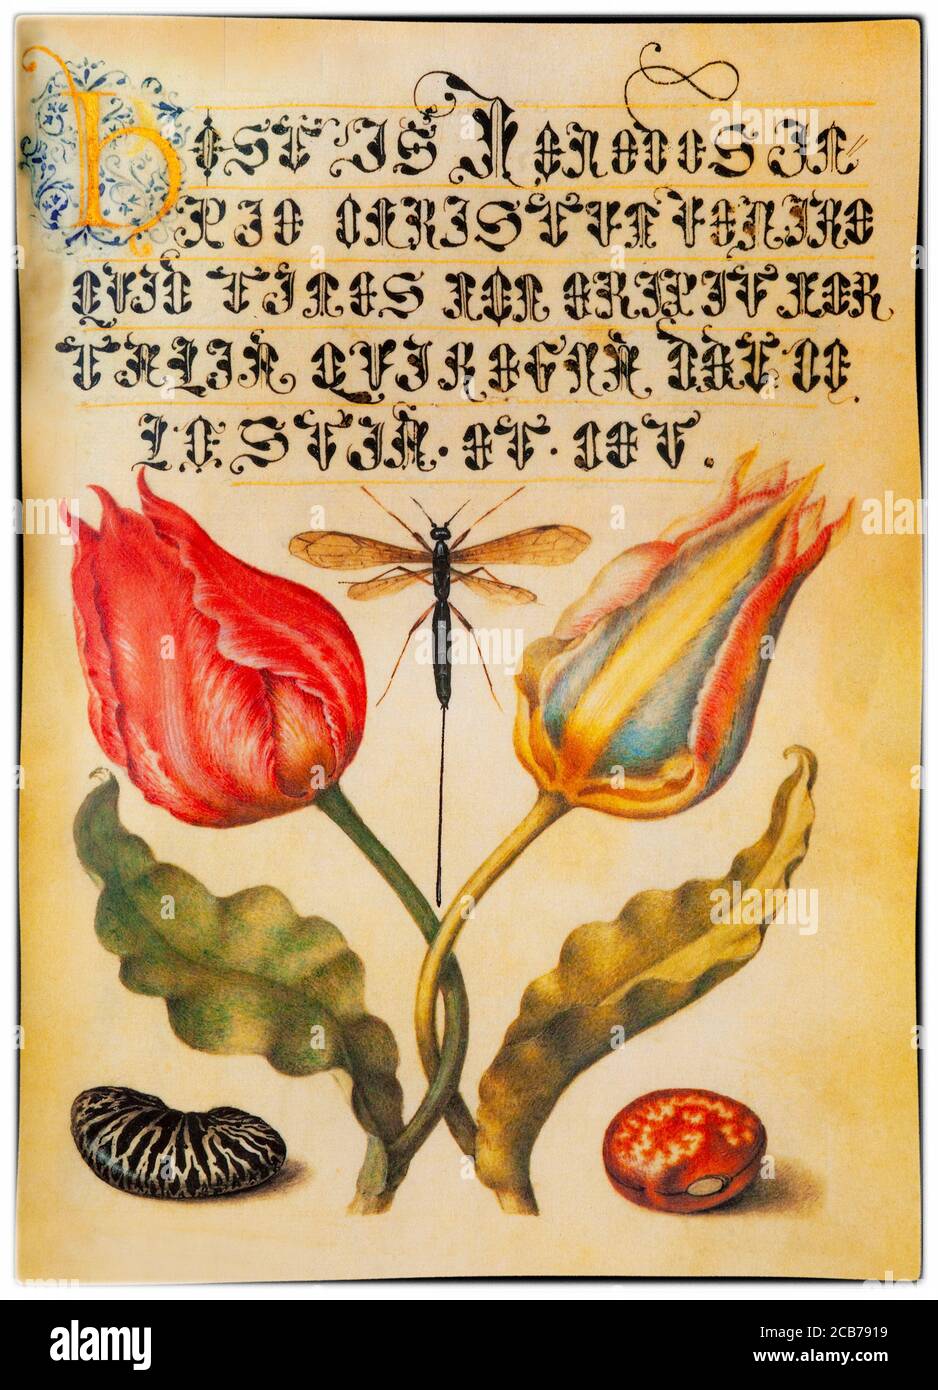 Eine Tulpenminiatur von Georg Höfnagel (1542-1601), einem flämischen Maler, der von Kaiser Rudolf II. Beauftragt wurde, die Mira calligraphiae monumenta (das Musterbuch der Kalligraphie) zu illustrieren, in dem die Miniatur erscheint. Die Pflanzen wurden von Charles de l'Ecuse aka Clusius (1526-1609), Direktor des Botanischen Gartens Leiden in Holland, angebaut. Stockfoto